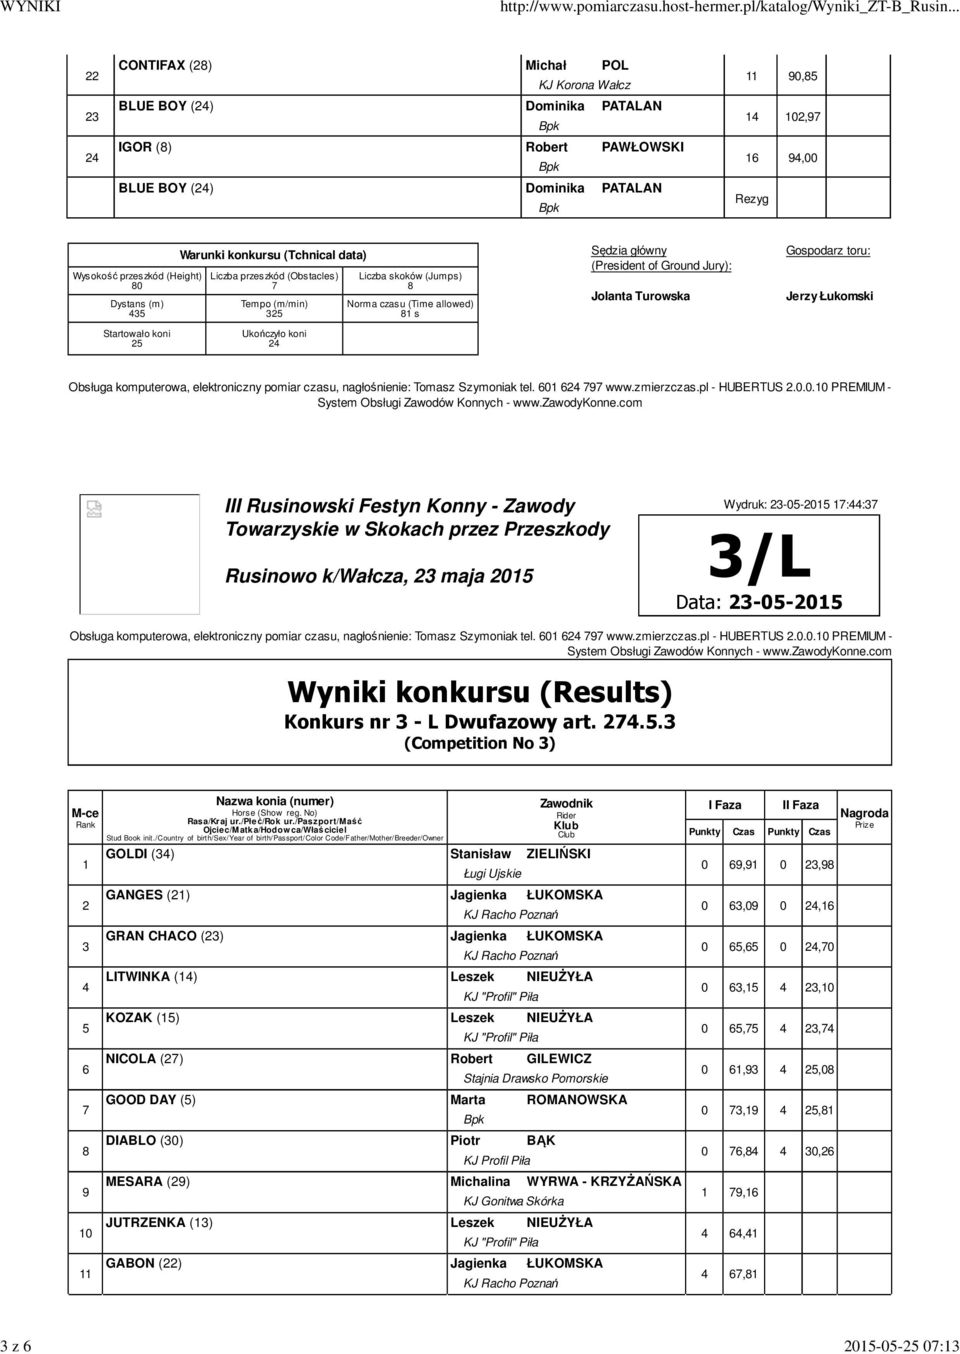 2015 1:44:3 Konkurs nr 3 - L Dwufazowy art. 24.5.3 (Competition No 3) 1 2 3 4 5 10 11 GOLDI (34) Stanisław ZIELIŃSKI Ługi Ujskie GANGES (21) Jagienka ŁUKOMSKA GRAN CHACO (23) Jagienka ŁUKOMSKA